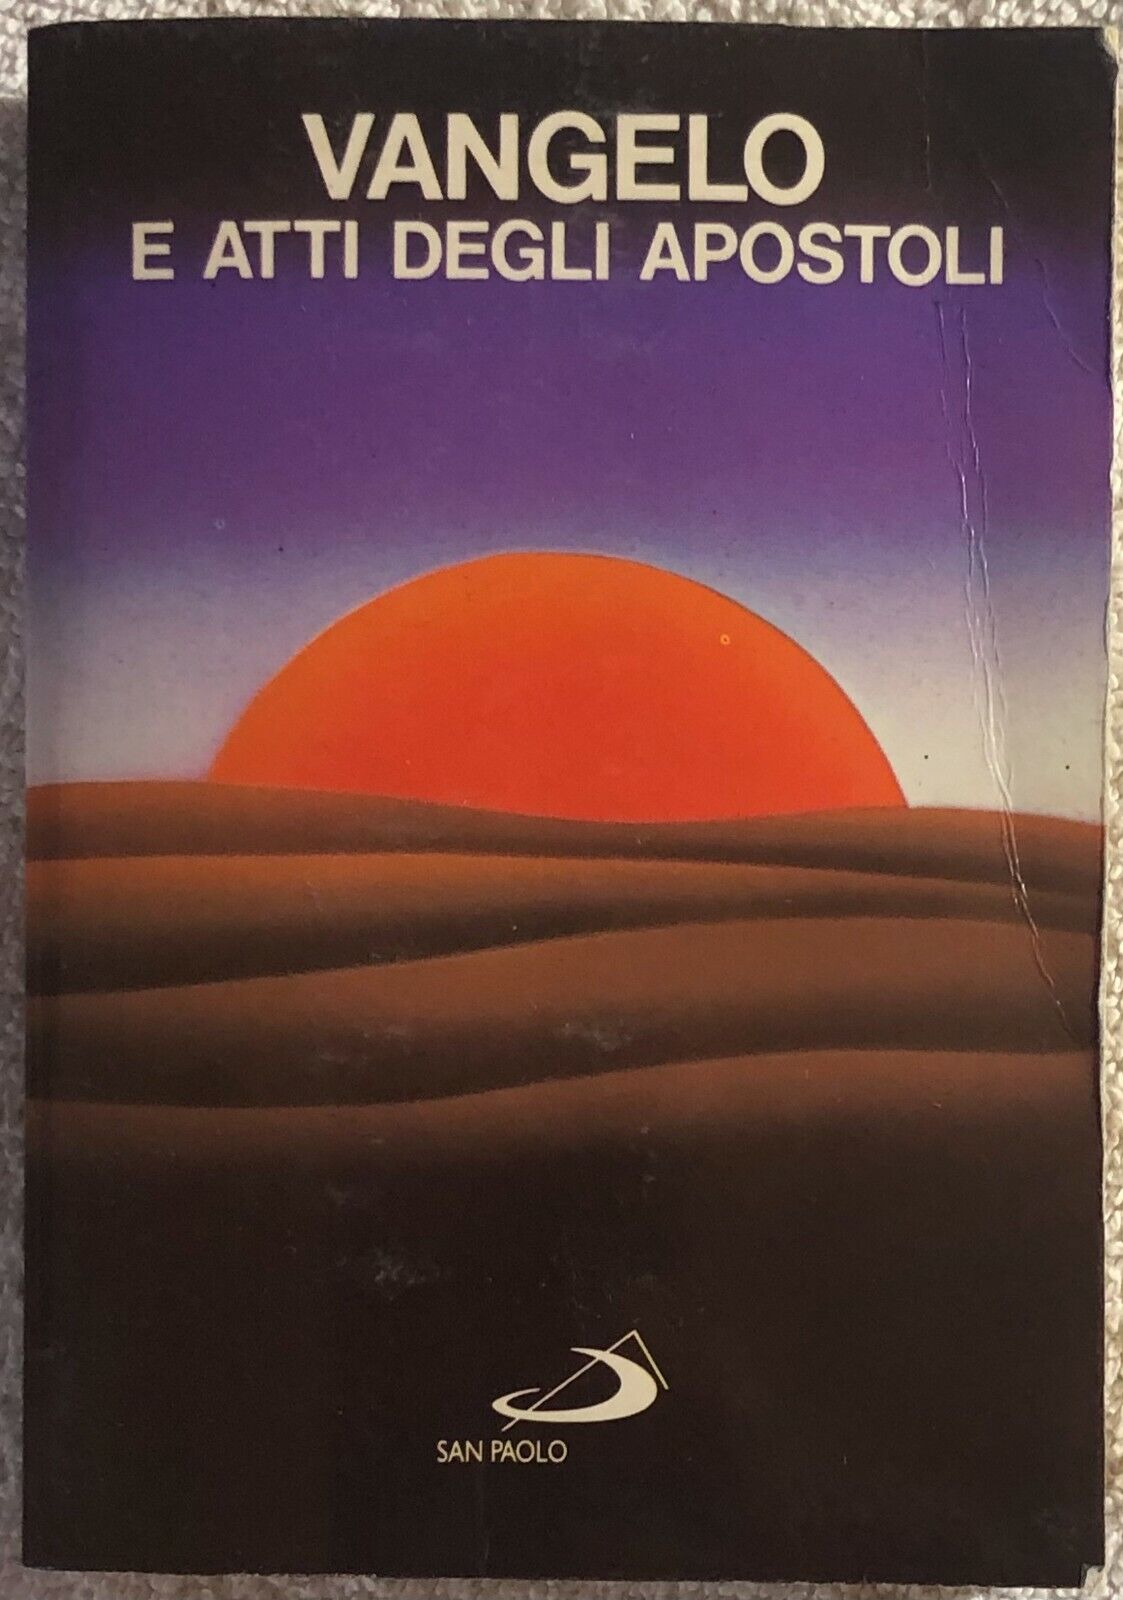 Vangelo e atti degli apostoli di Aa.vv.,  1987,  Edizioni Paoline